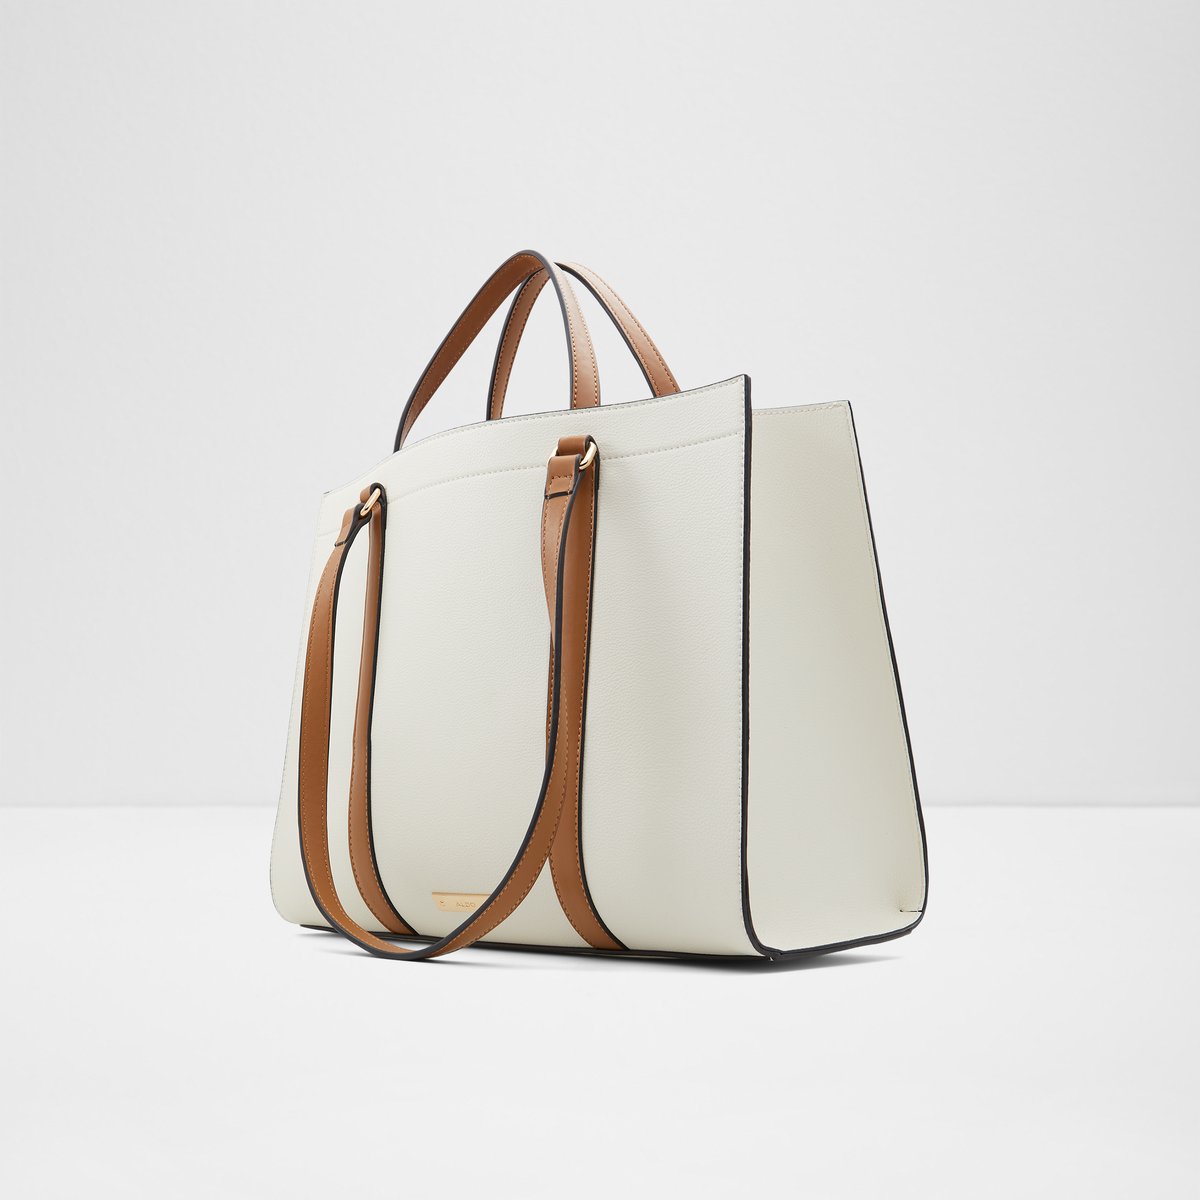 Vardonalx Medium Beige Women's Top Handle Bags | ALDO US